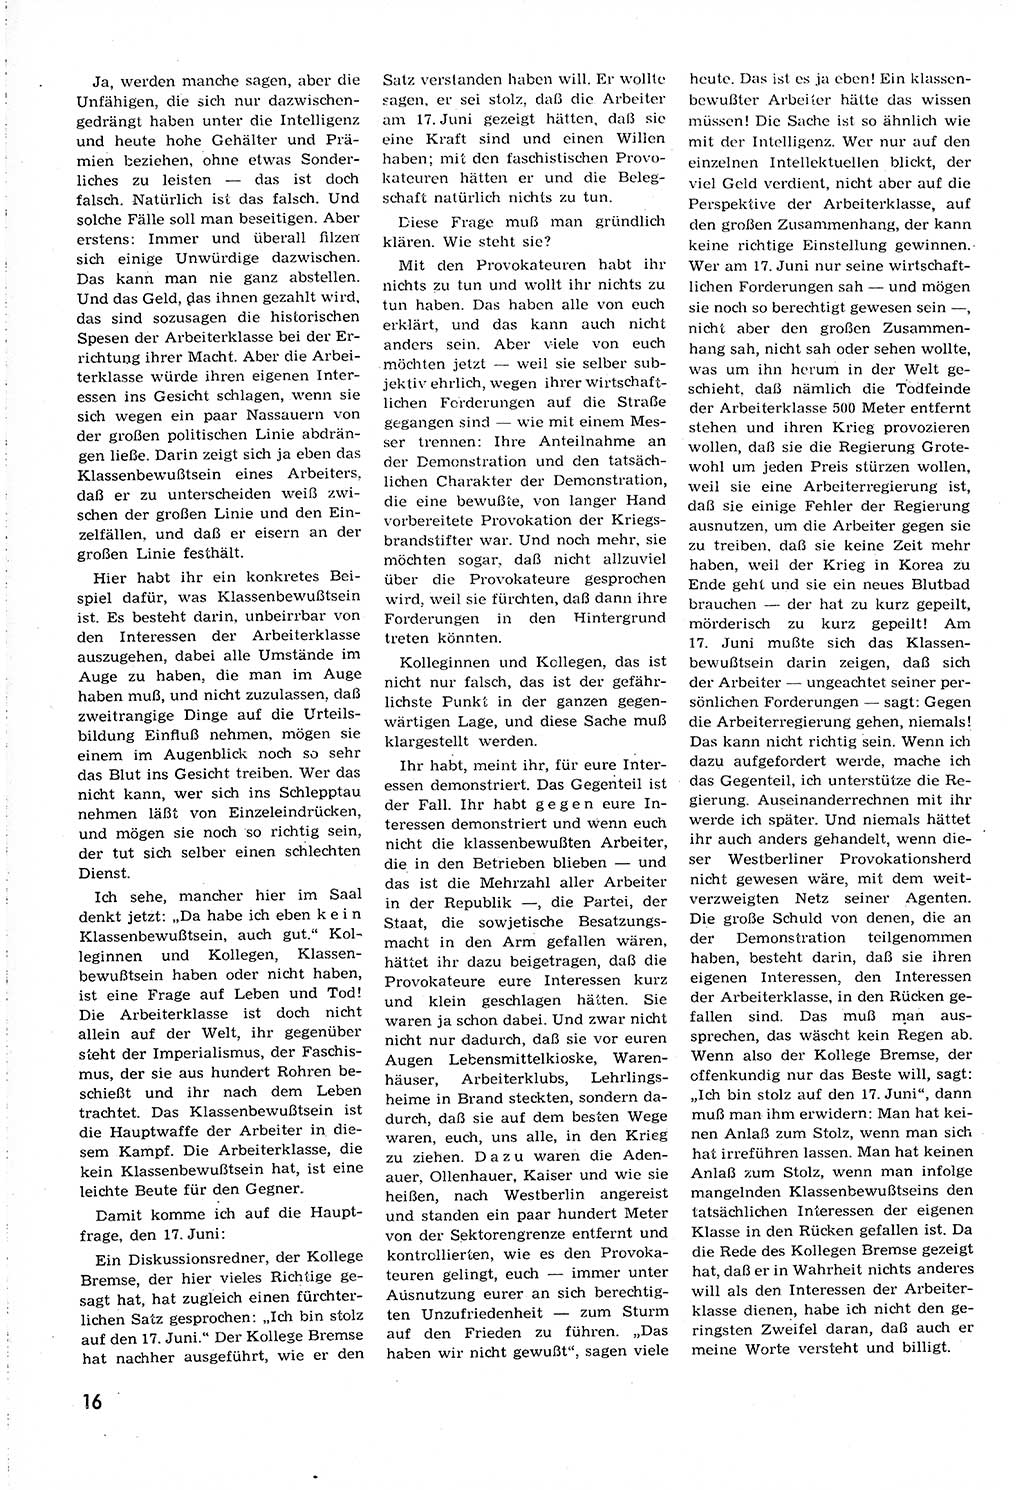 Neuer Weg (NW), Organ des Zentralkomitees (ZK) [Sozialistische Einheitspartei Deutschlands (SED)] für alle Parteiarbeiter, 8. Jahrgang [Deutsche Demokratische Republik (DDR)] 1953, Heft 12/16 (NW ZK SED DDR 1953, H. 12/16)